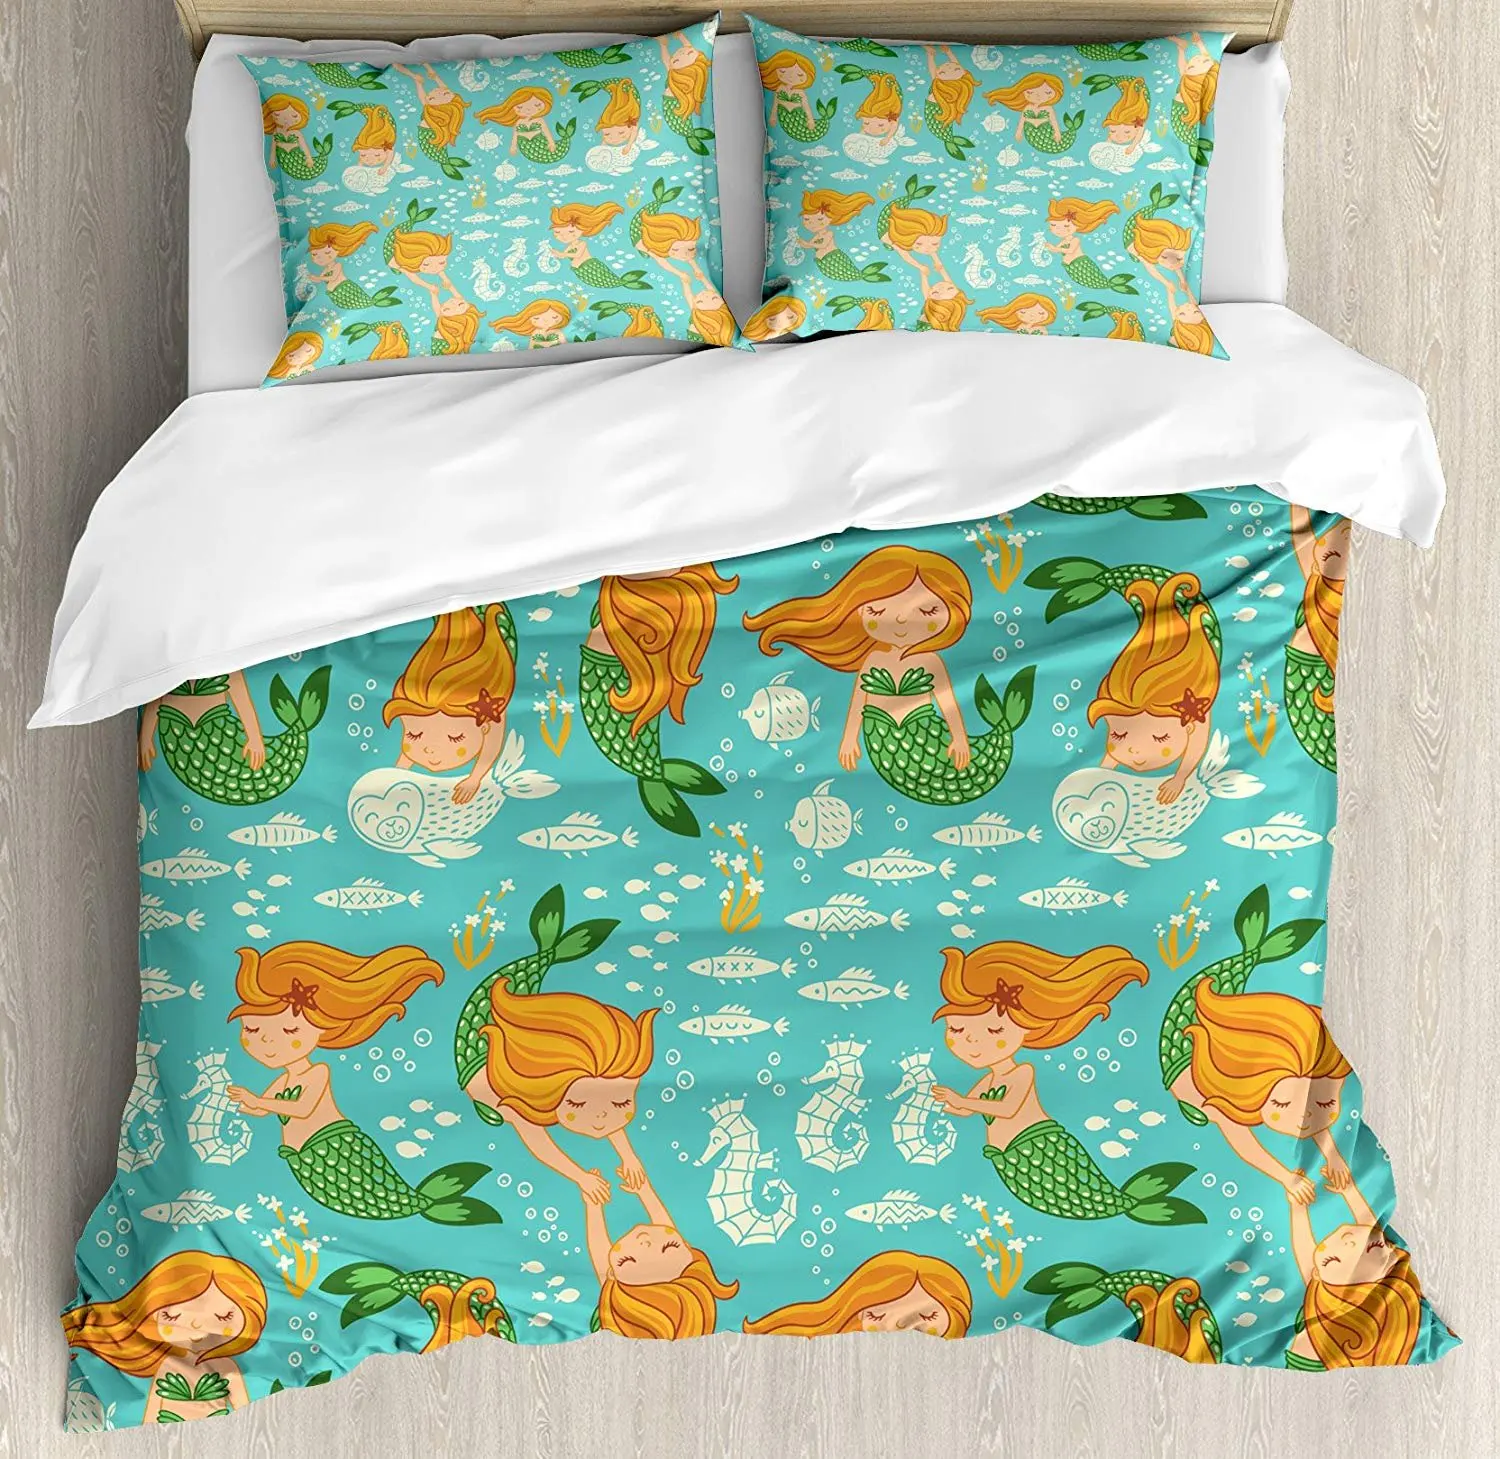 

Комплект постельного белья с изображением русалки, подводный мультяшный мир, маленькая Русалка, для девочек, друзей, морская лошадь, ракушк...